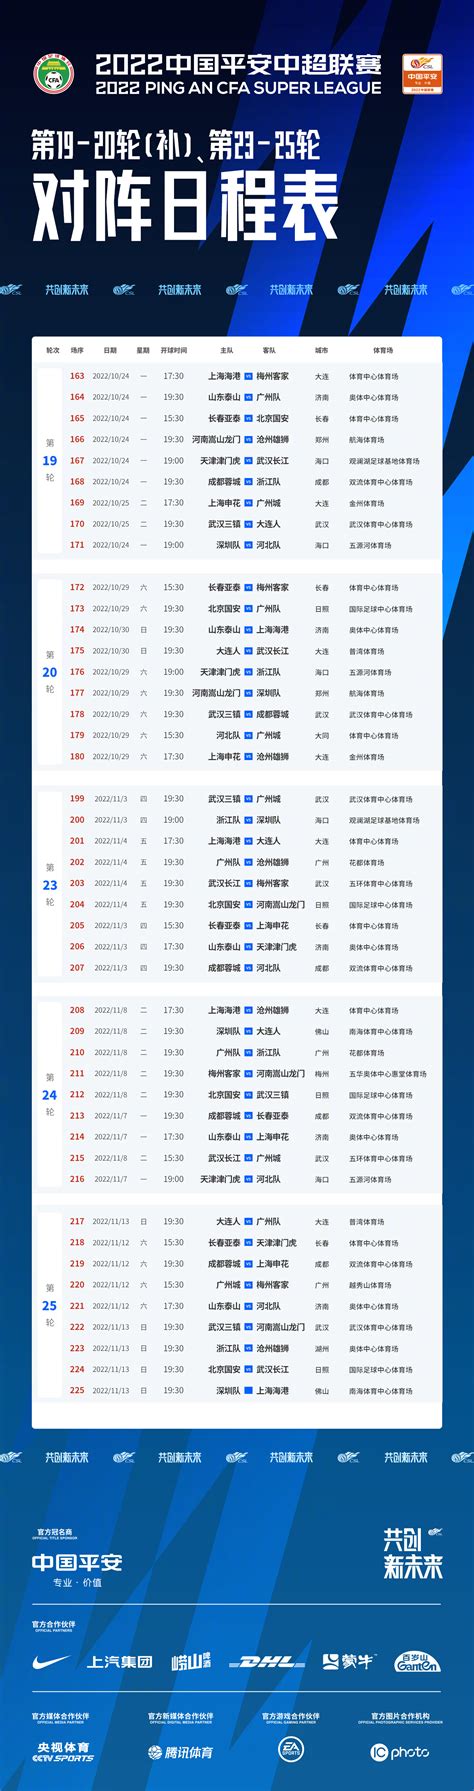 中超联赛更新赛程 10月24日进行第19轮补赛_中国江苏网